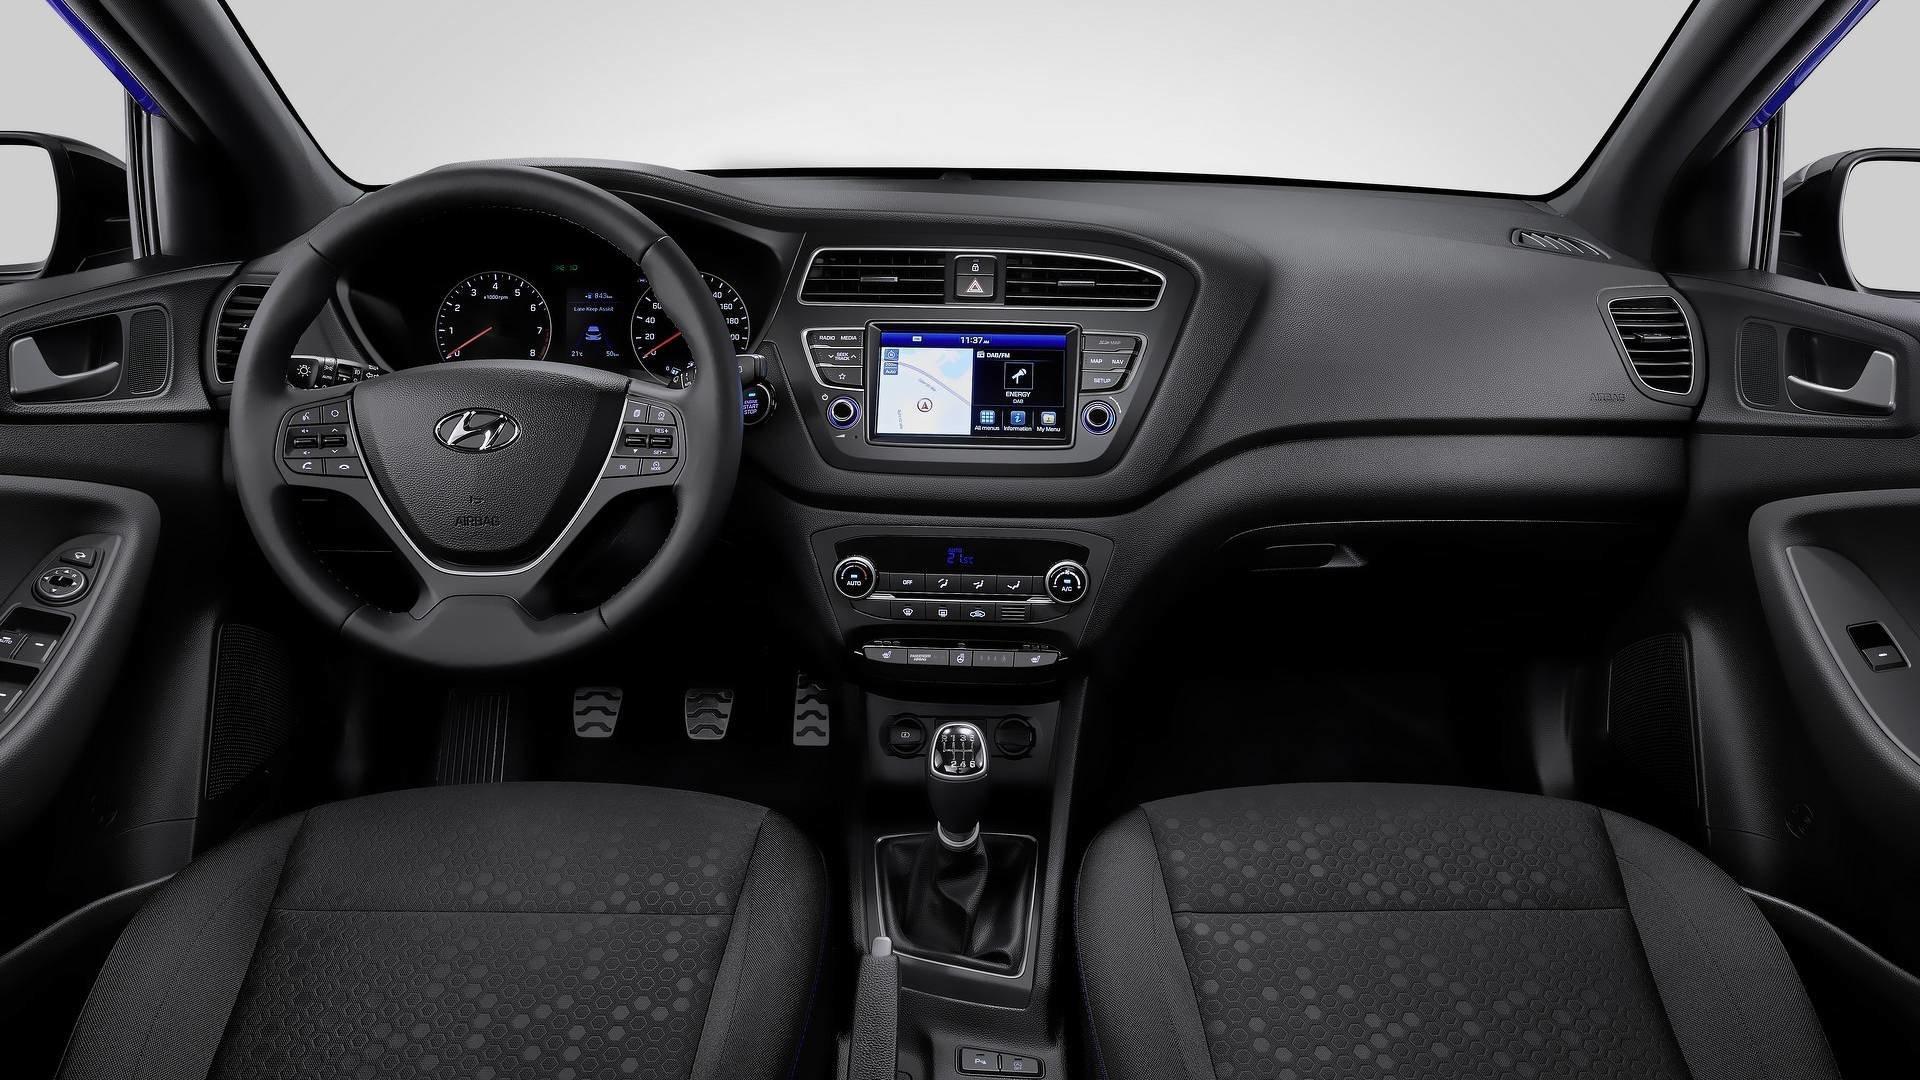 2018 Hyundai i20 tanıtıldı